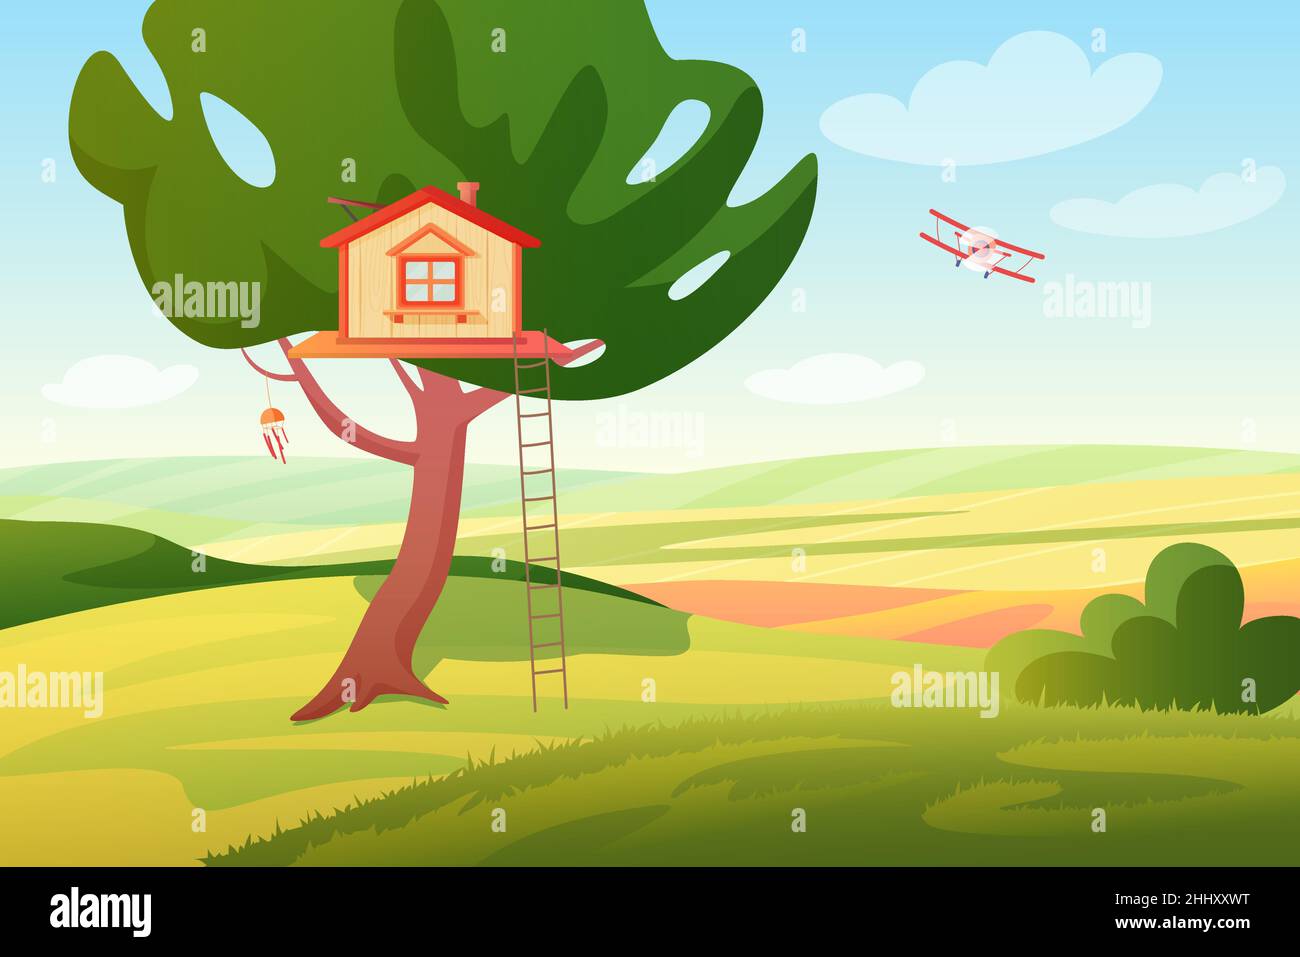 Stilisierte helle Sommer ländlichen Feldern sonnige Panoramalandschaft mit einem hölzernen Kinderbaumhaus und Leiter, Ebene. Bunte Cartoon Stil Vektor illus Stock Vektor